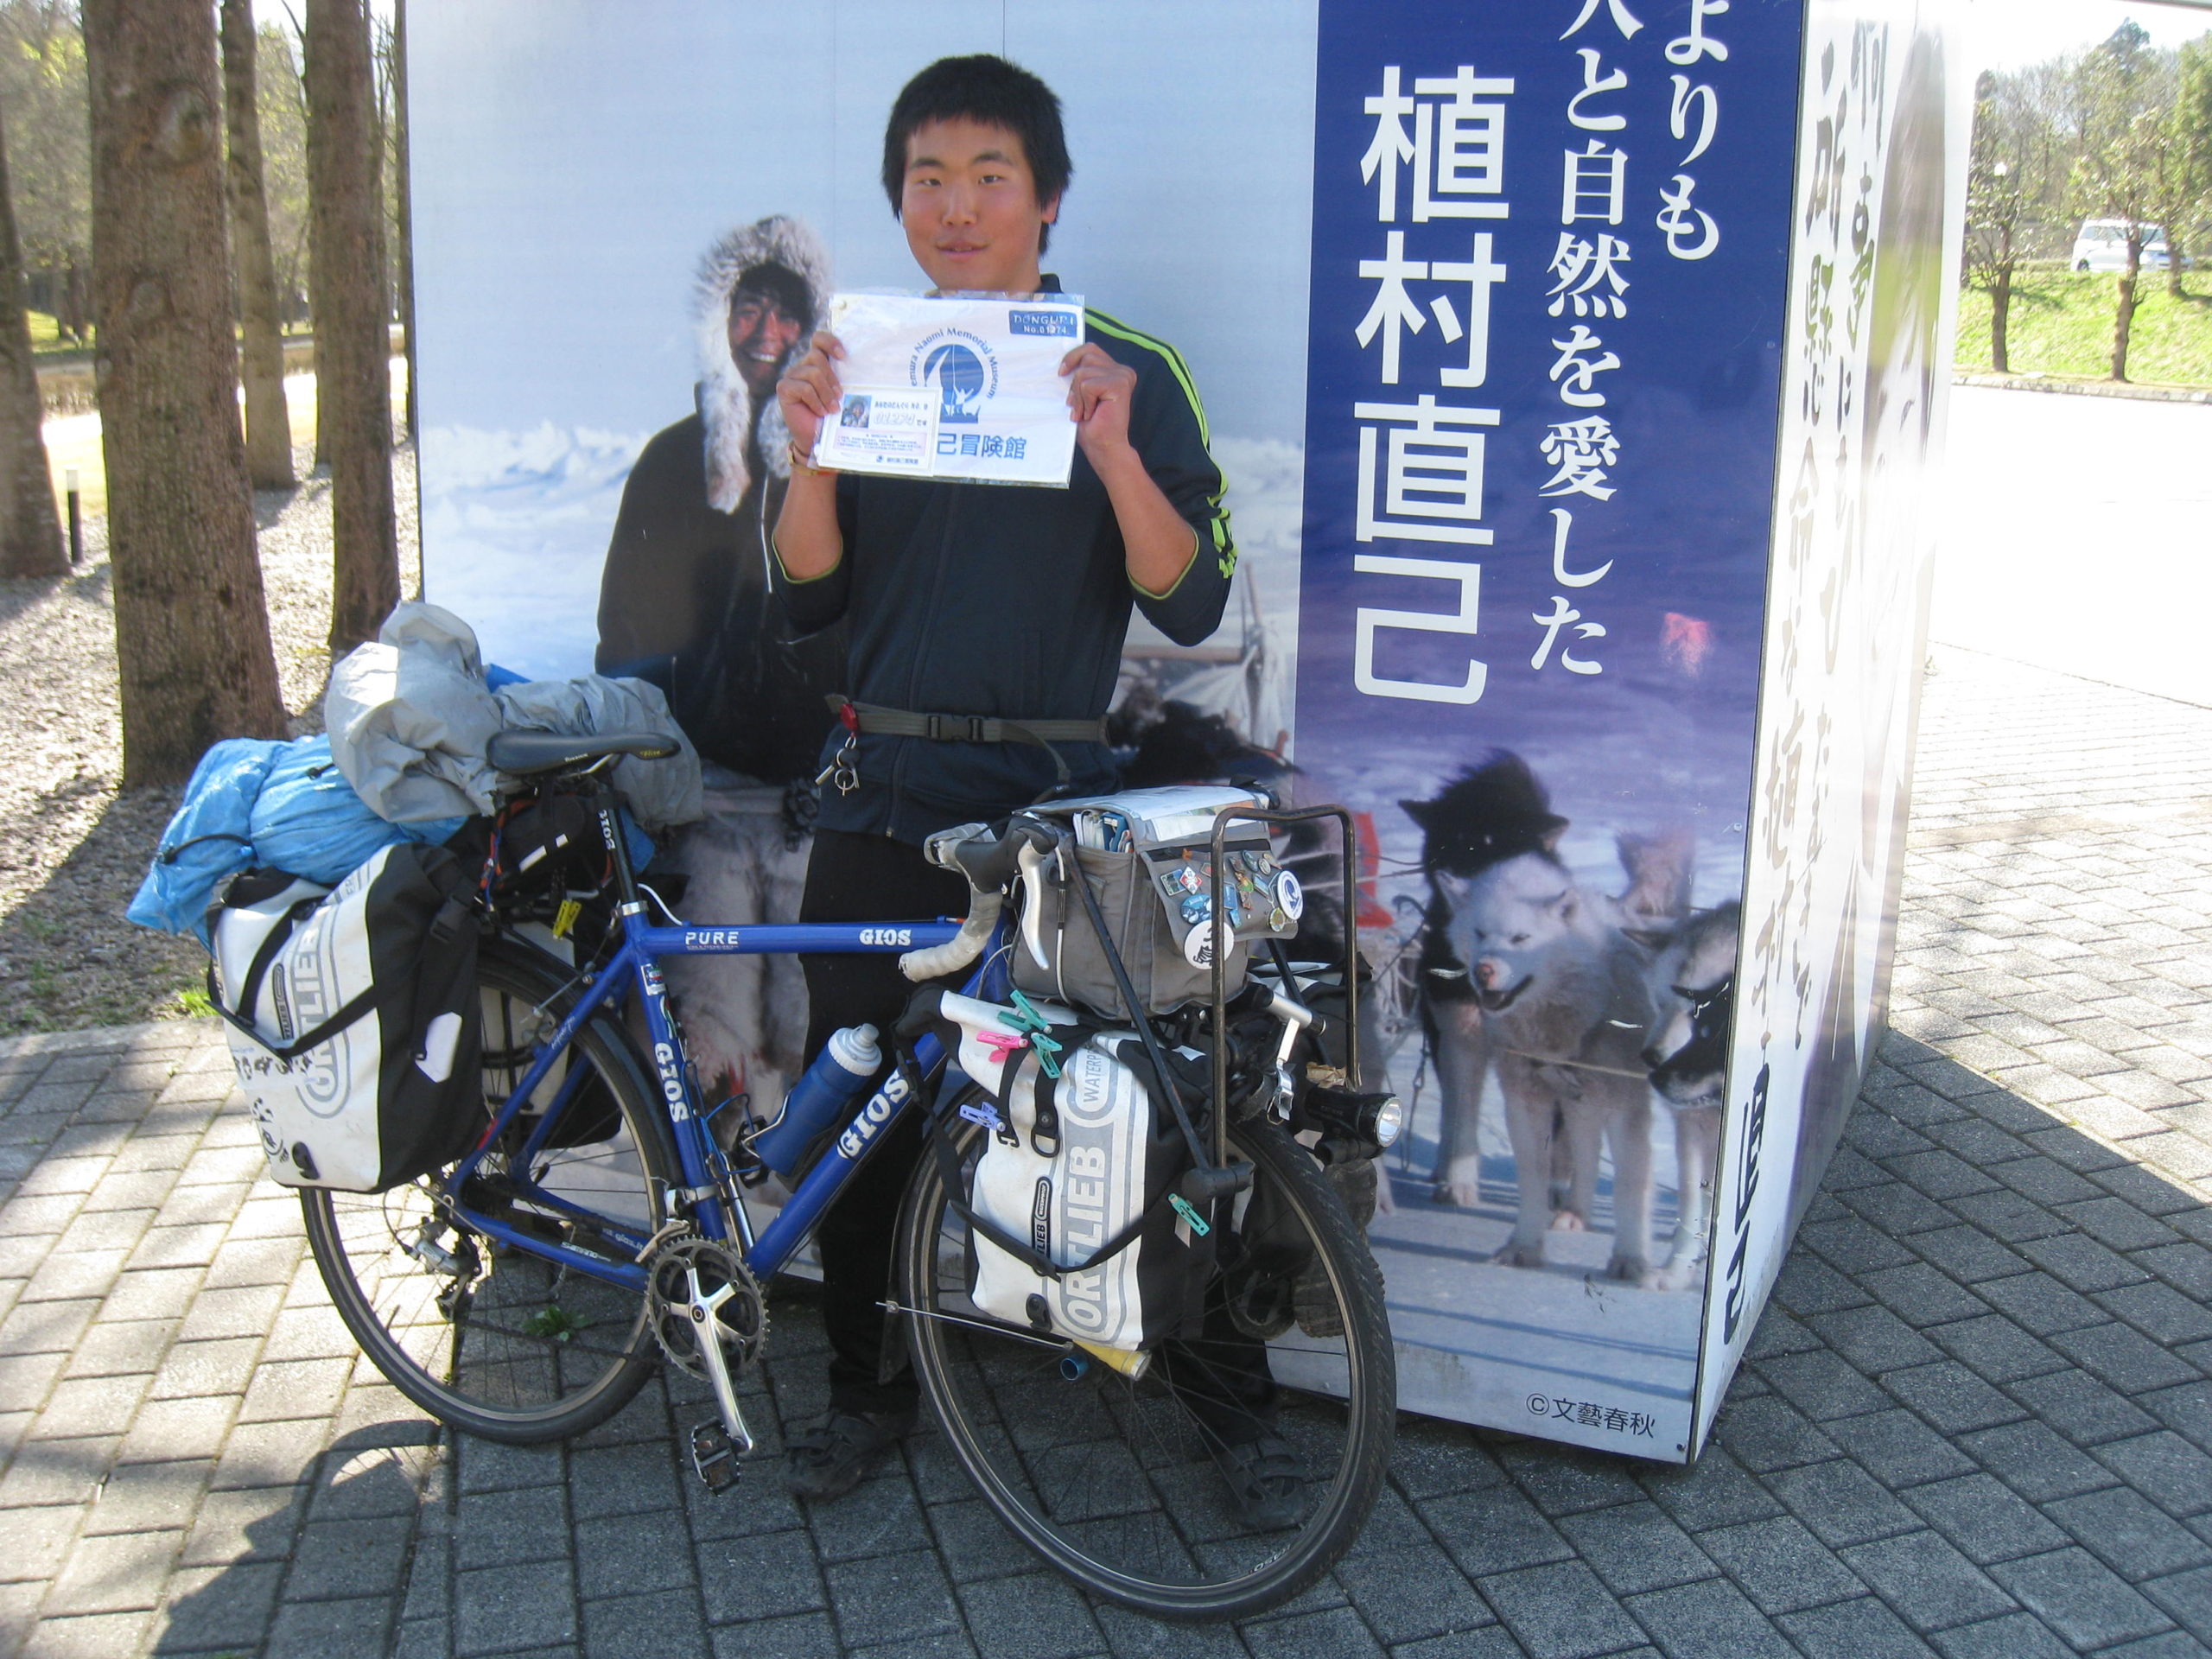 友達100人作る日本一周自転車旅